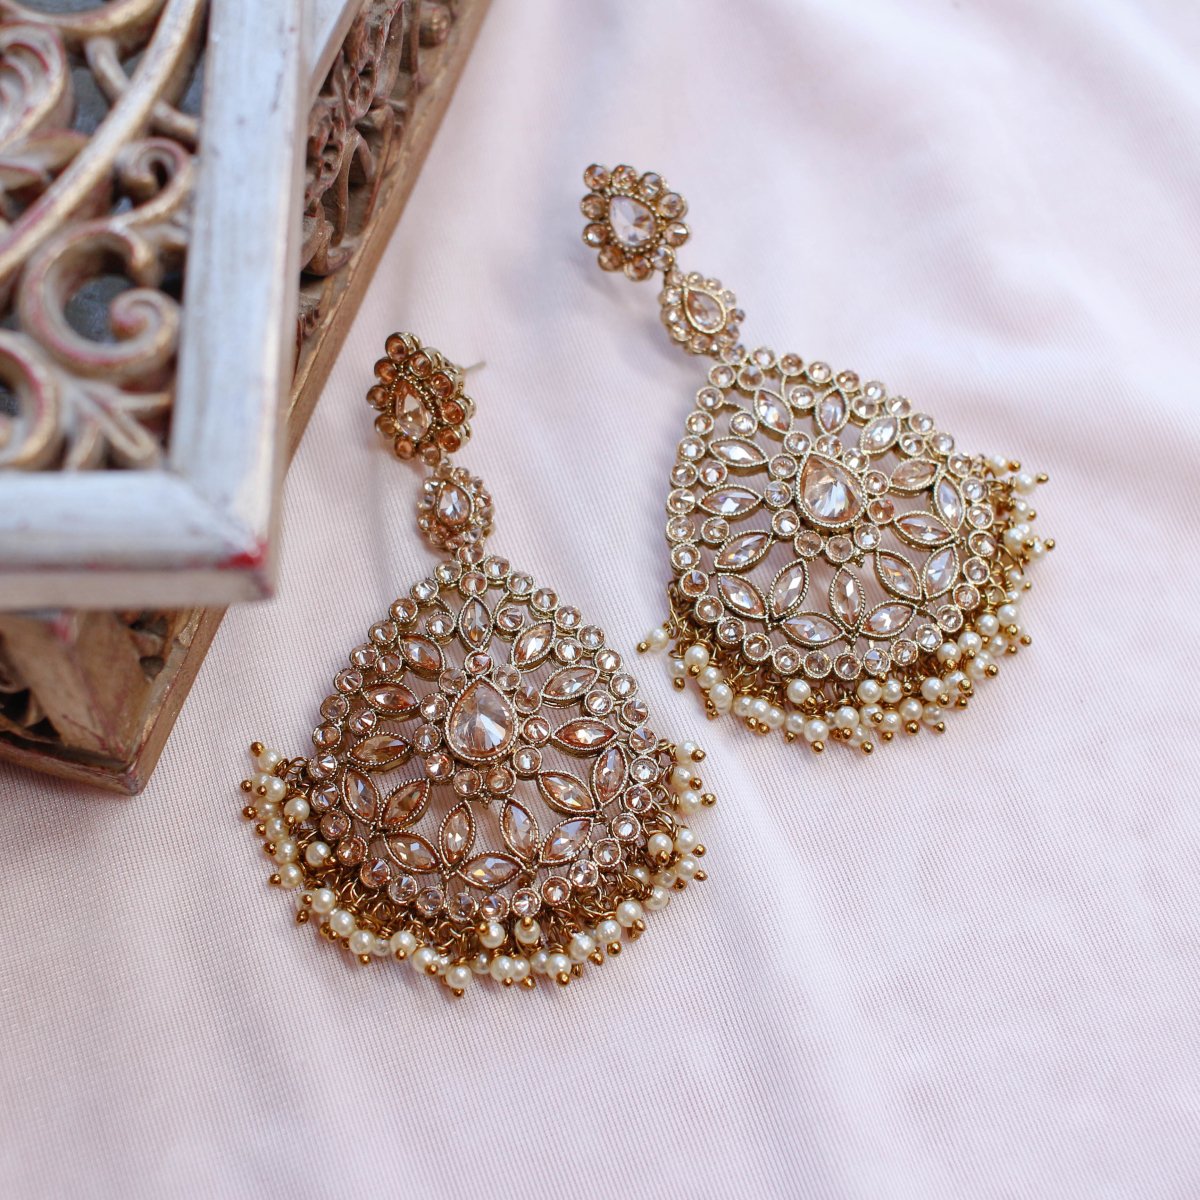 Antique Earrings Online | Antique Gold Earrings Designs | Kalyan Jewellers